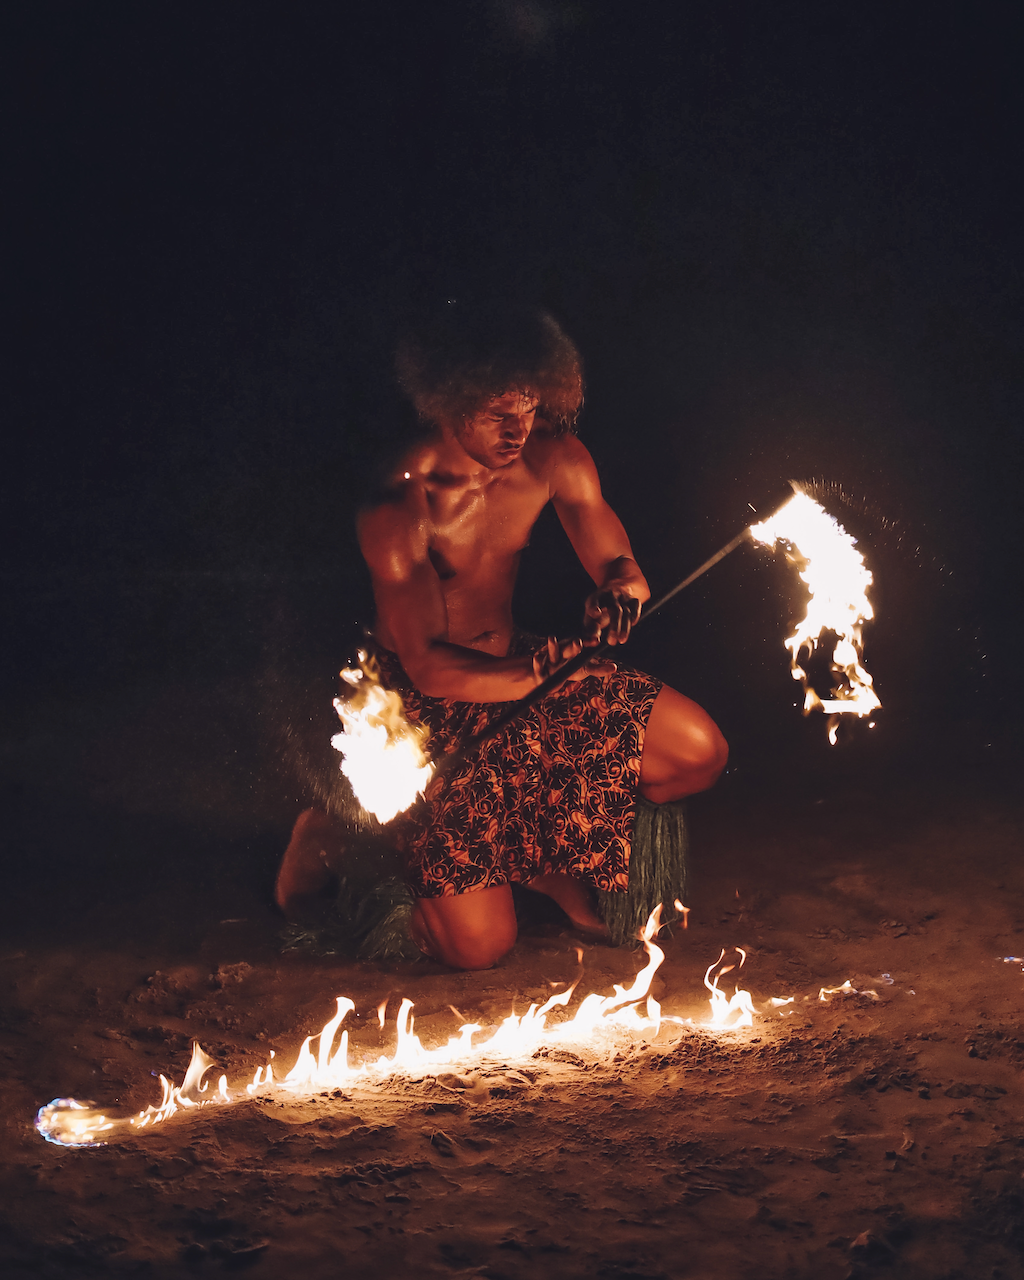  Spectacle de feux à Smugglers Cove - Nadi - Viti Levu - Îles Fidji